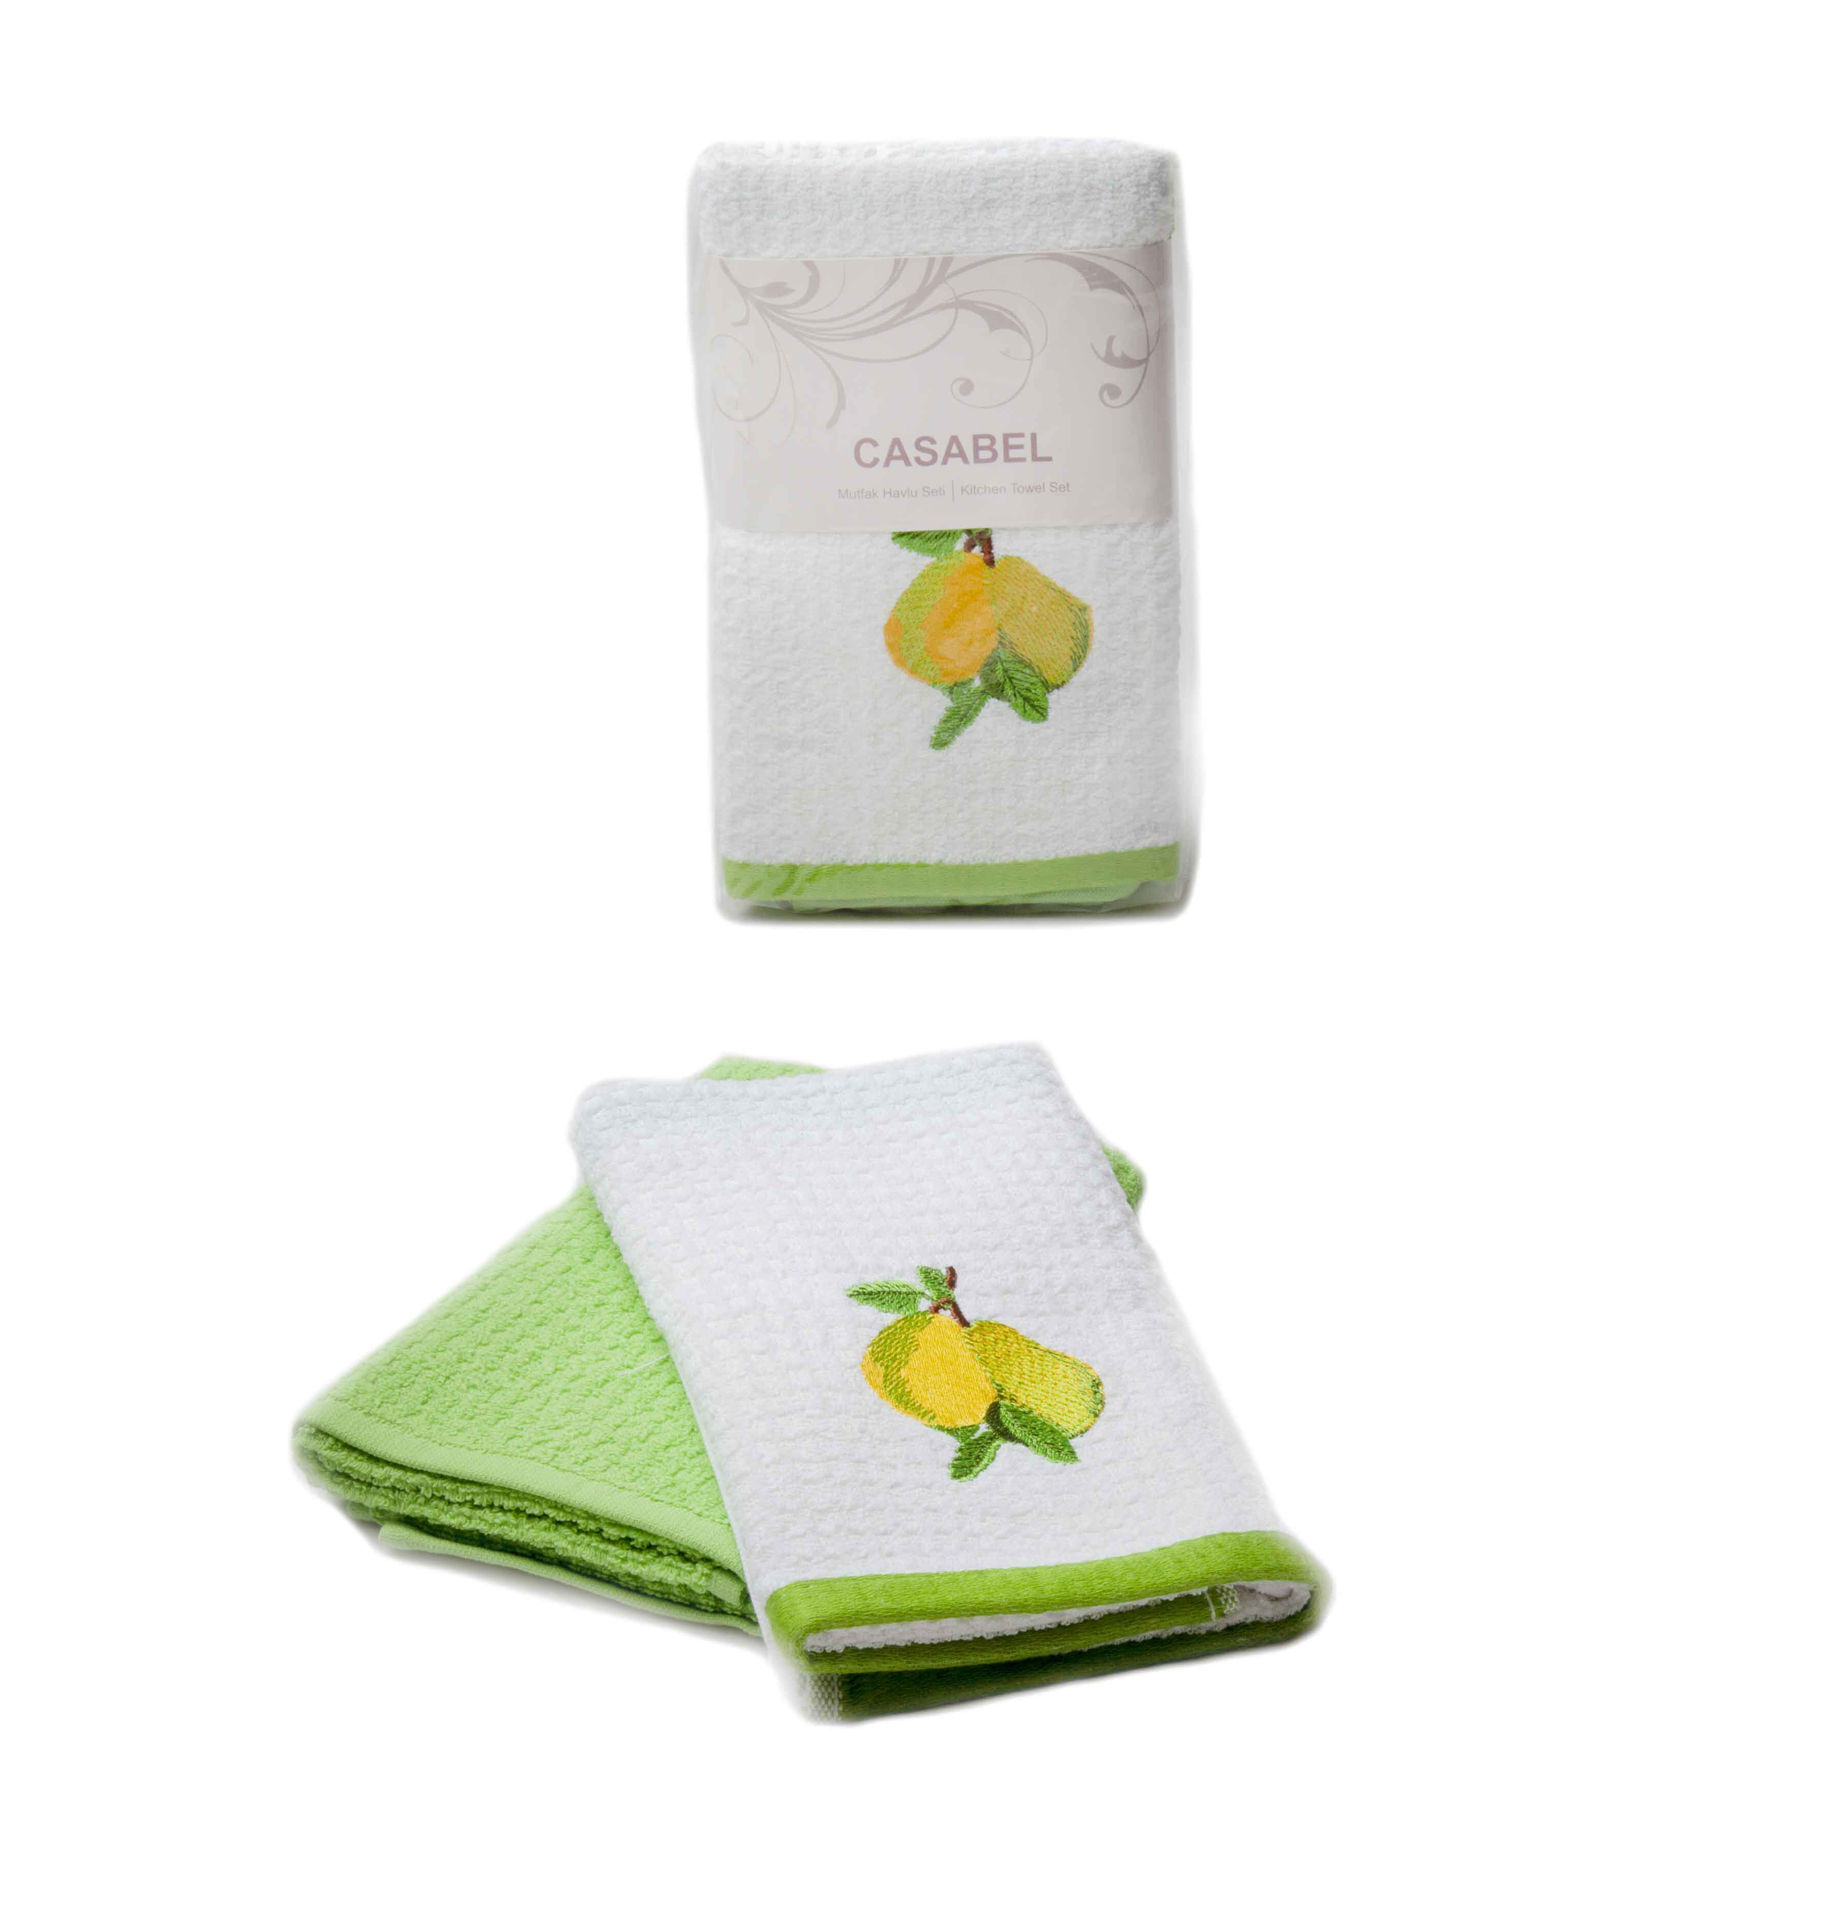 حوله 2 تکه آشپزخانه کازابل طرح گلابی Casabel Kitchen Towel Set 2pcs 40X70 Pear White and Green Color